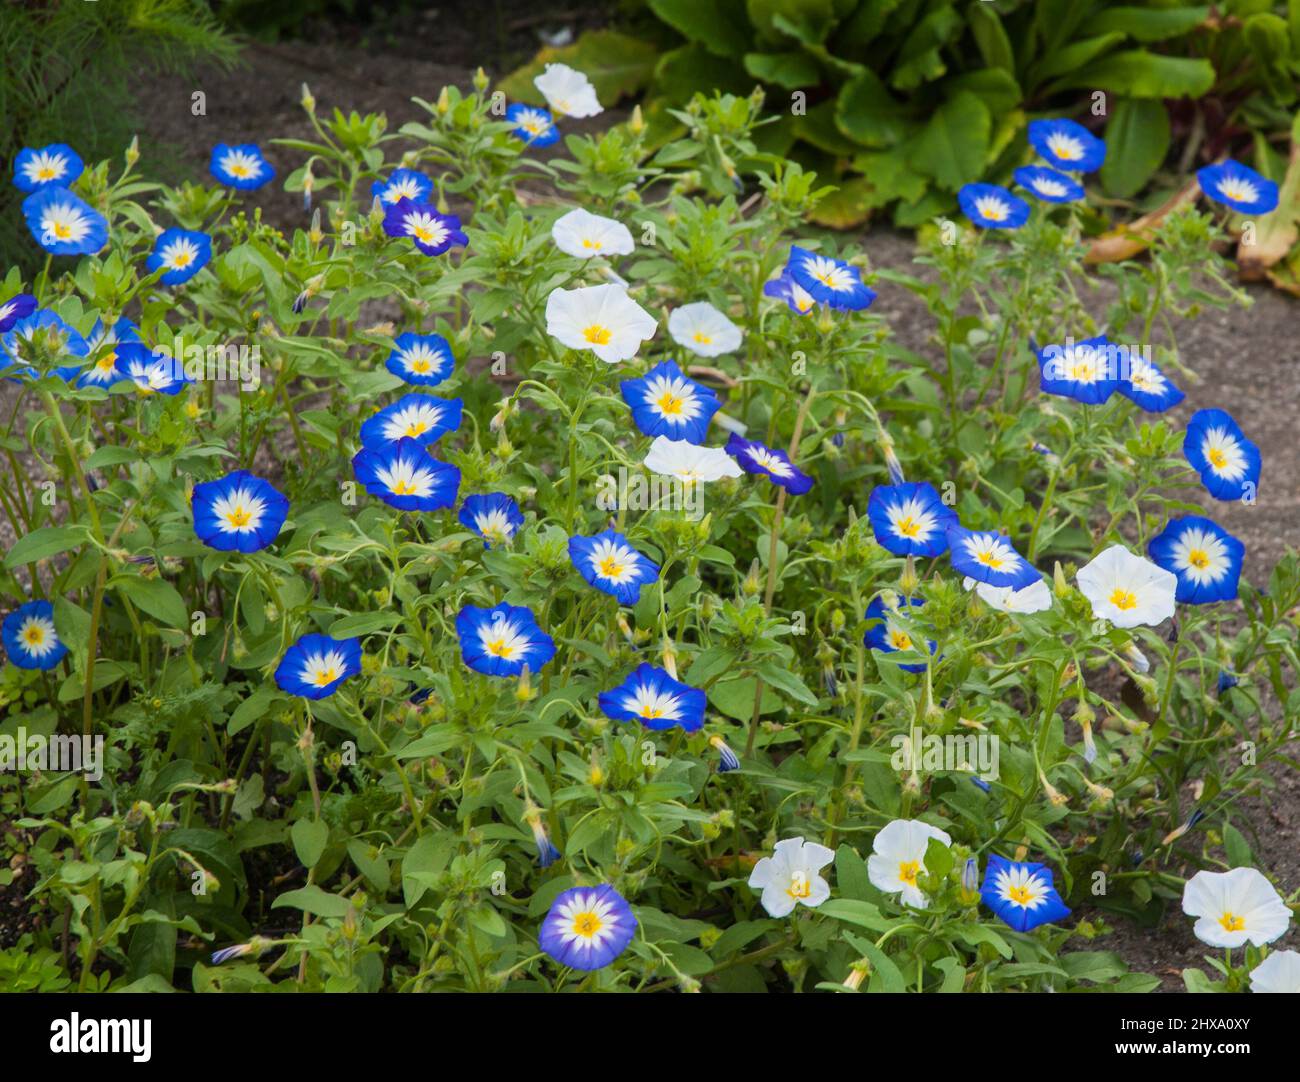 Un groupe de Convolvulus bleu et blanc est le fleuron d'une propagation non invasive annuelle qui vient dans diverses couleurs Un membre de la famille des Bindweed Banque D'Images